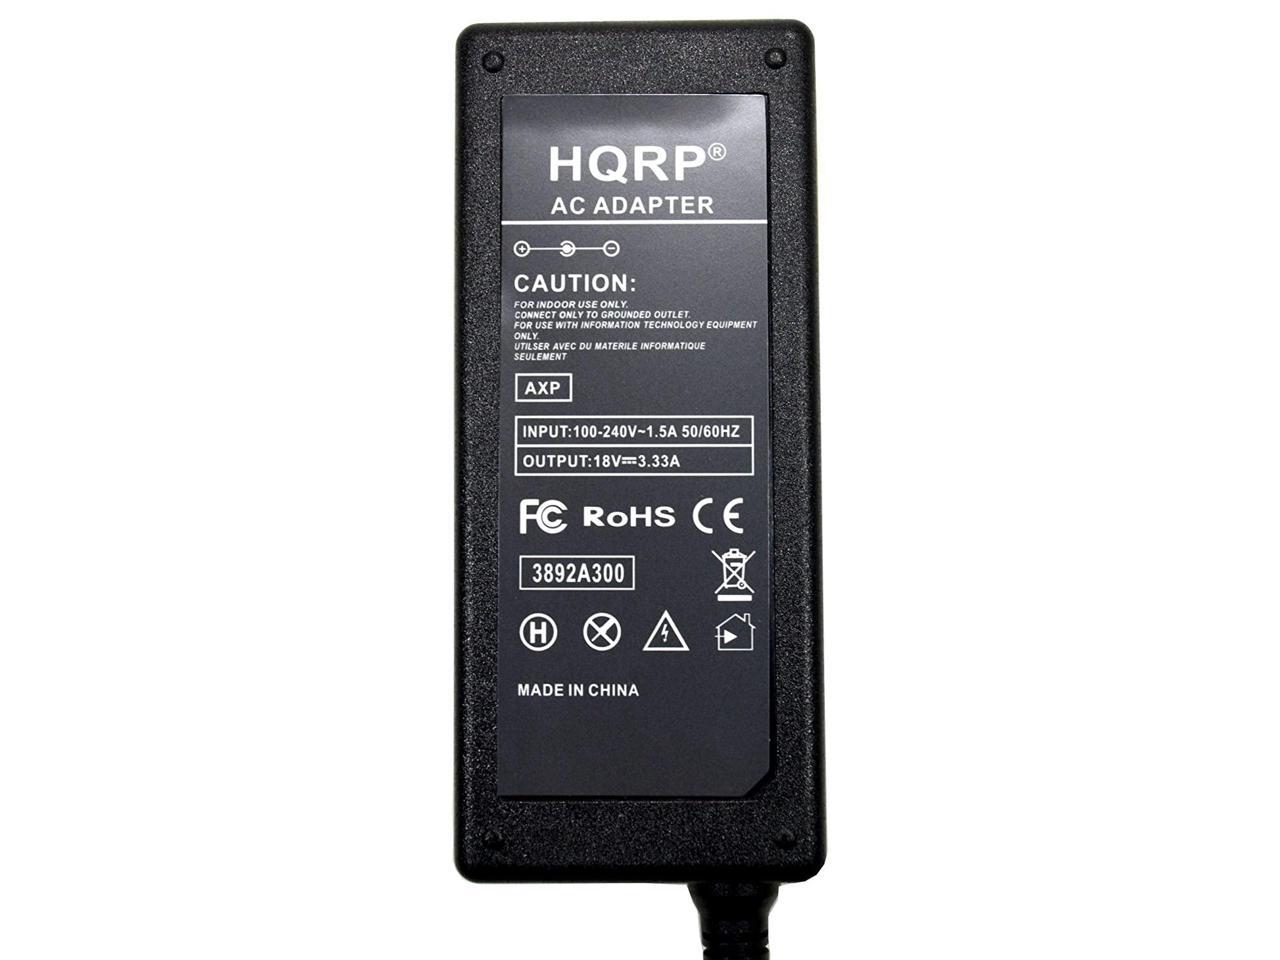 slap af sammensværgelse Uafhængighed HQRP AC Adapter for Bose Companion 20 Multimedia Speaker System 329509-1300  PSM36W-180 Power Supply Cord Adaptor + Euro Plug Adapter - Newegg.com